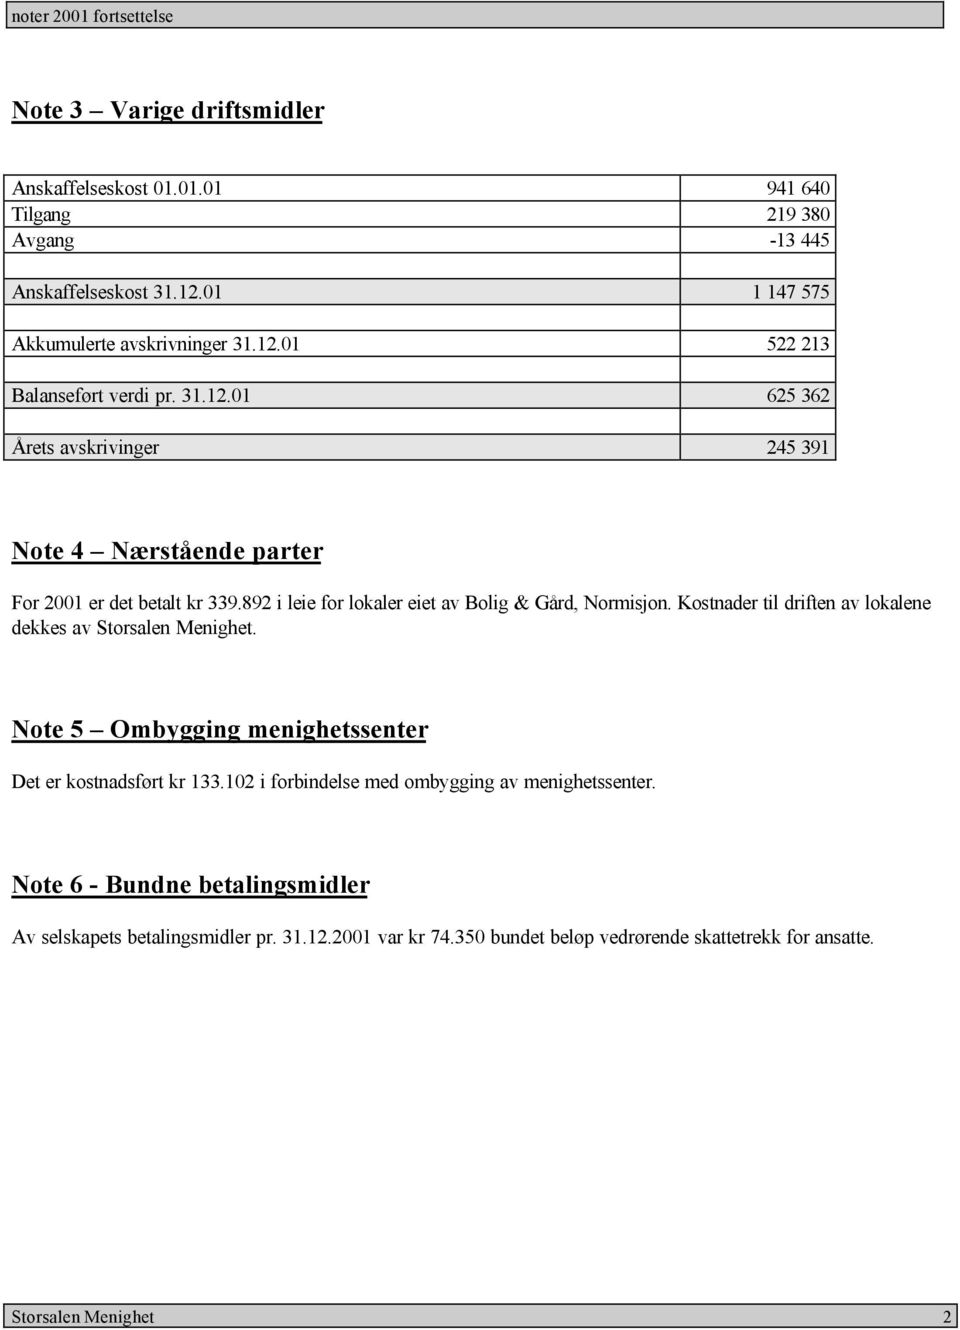 892 i leie for lokaler eiet av Bolig & Gård, Normisjon. Kostnader til driften av lokalene dekkes av. Note 5 Ombygging menighetssenter Det er kostnadsført kr 133.